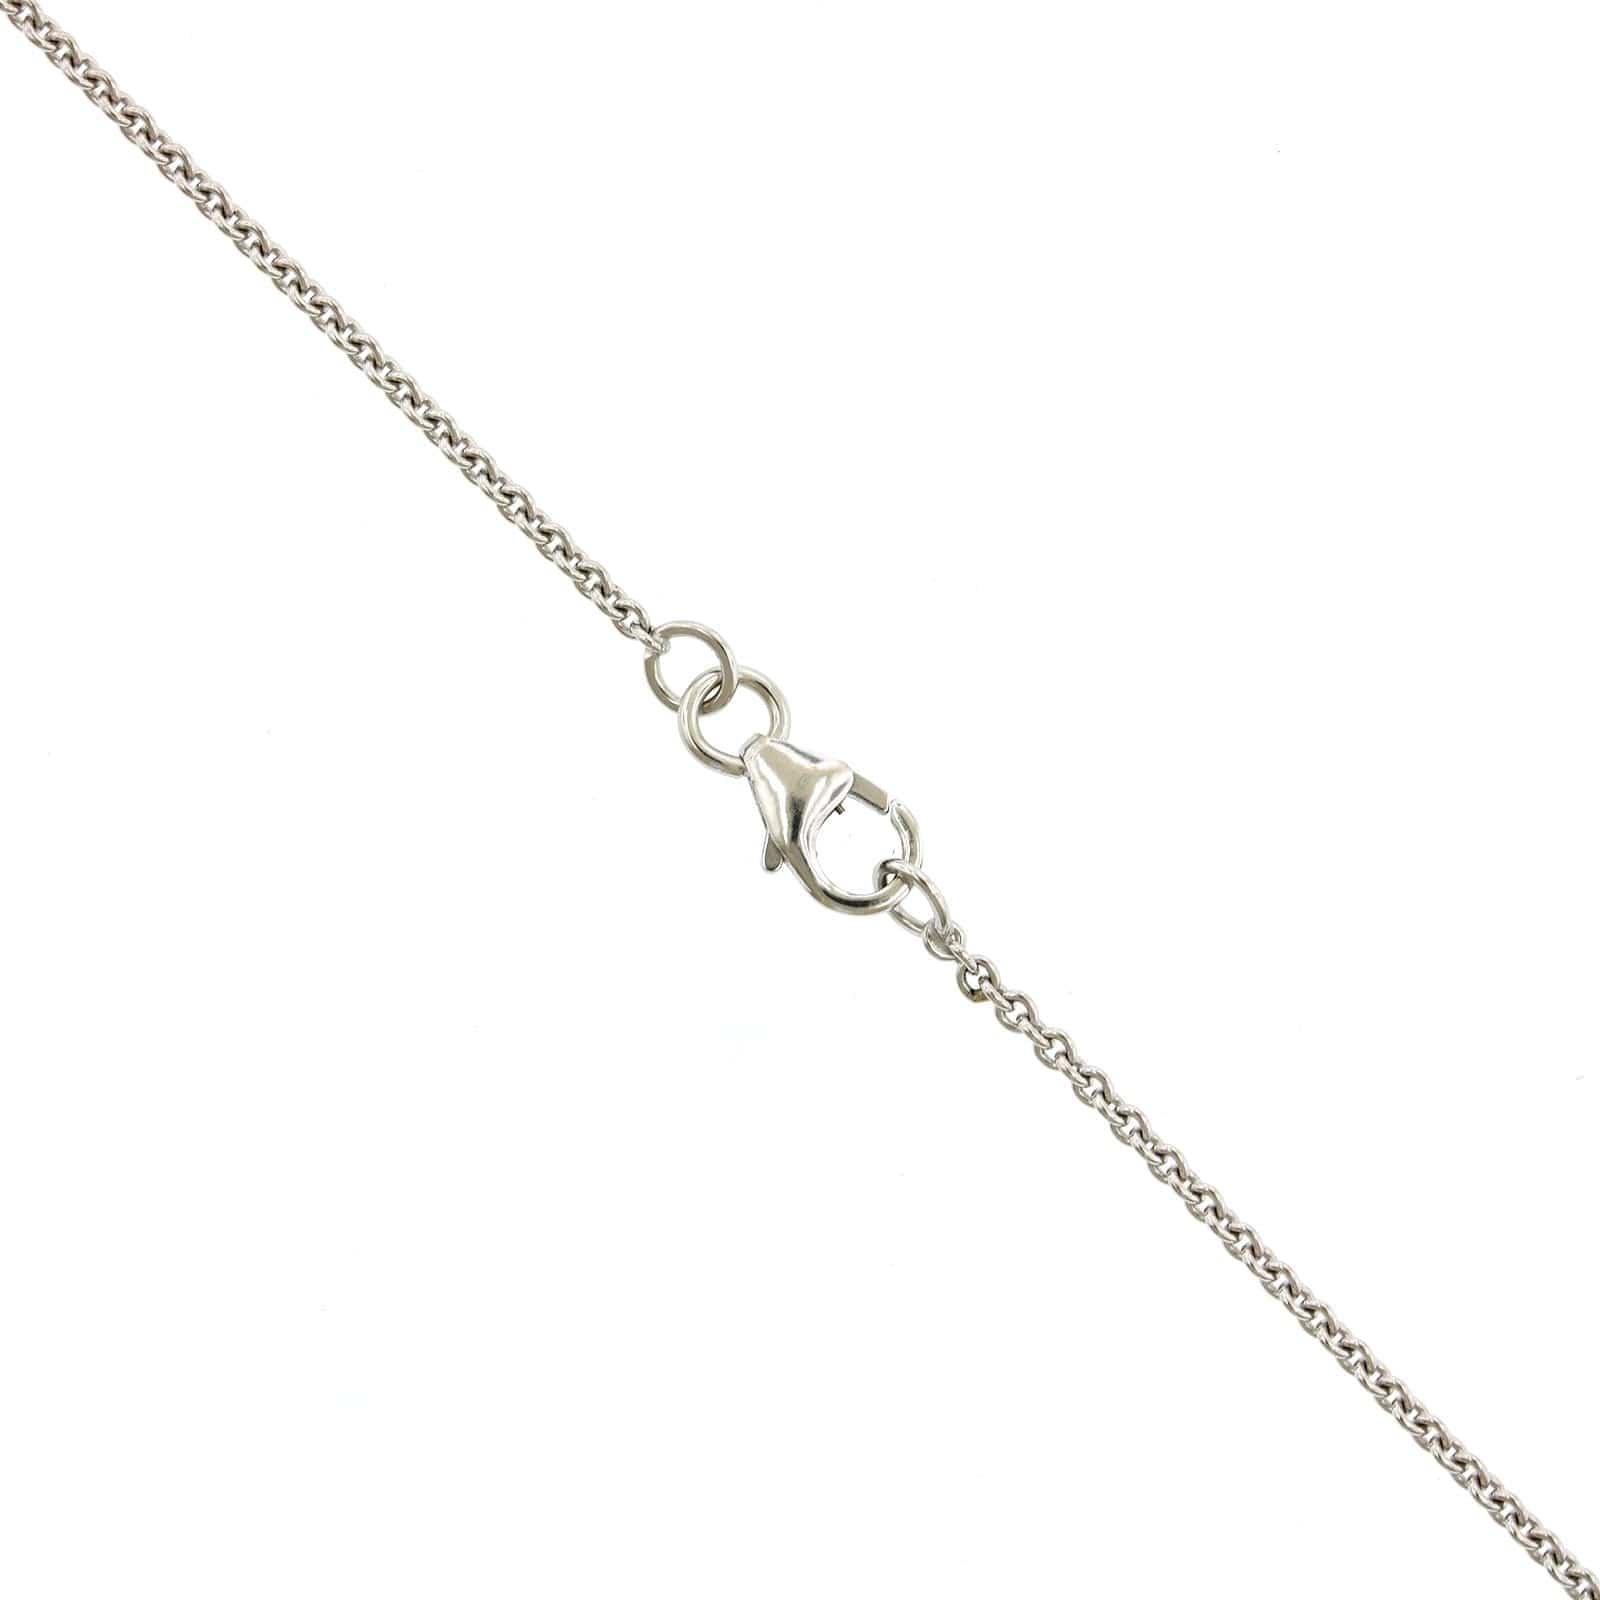 18K White Gold Pear Shape Cut Diamond Pendant, White Gold, Long's Jewelers